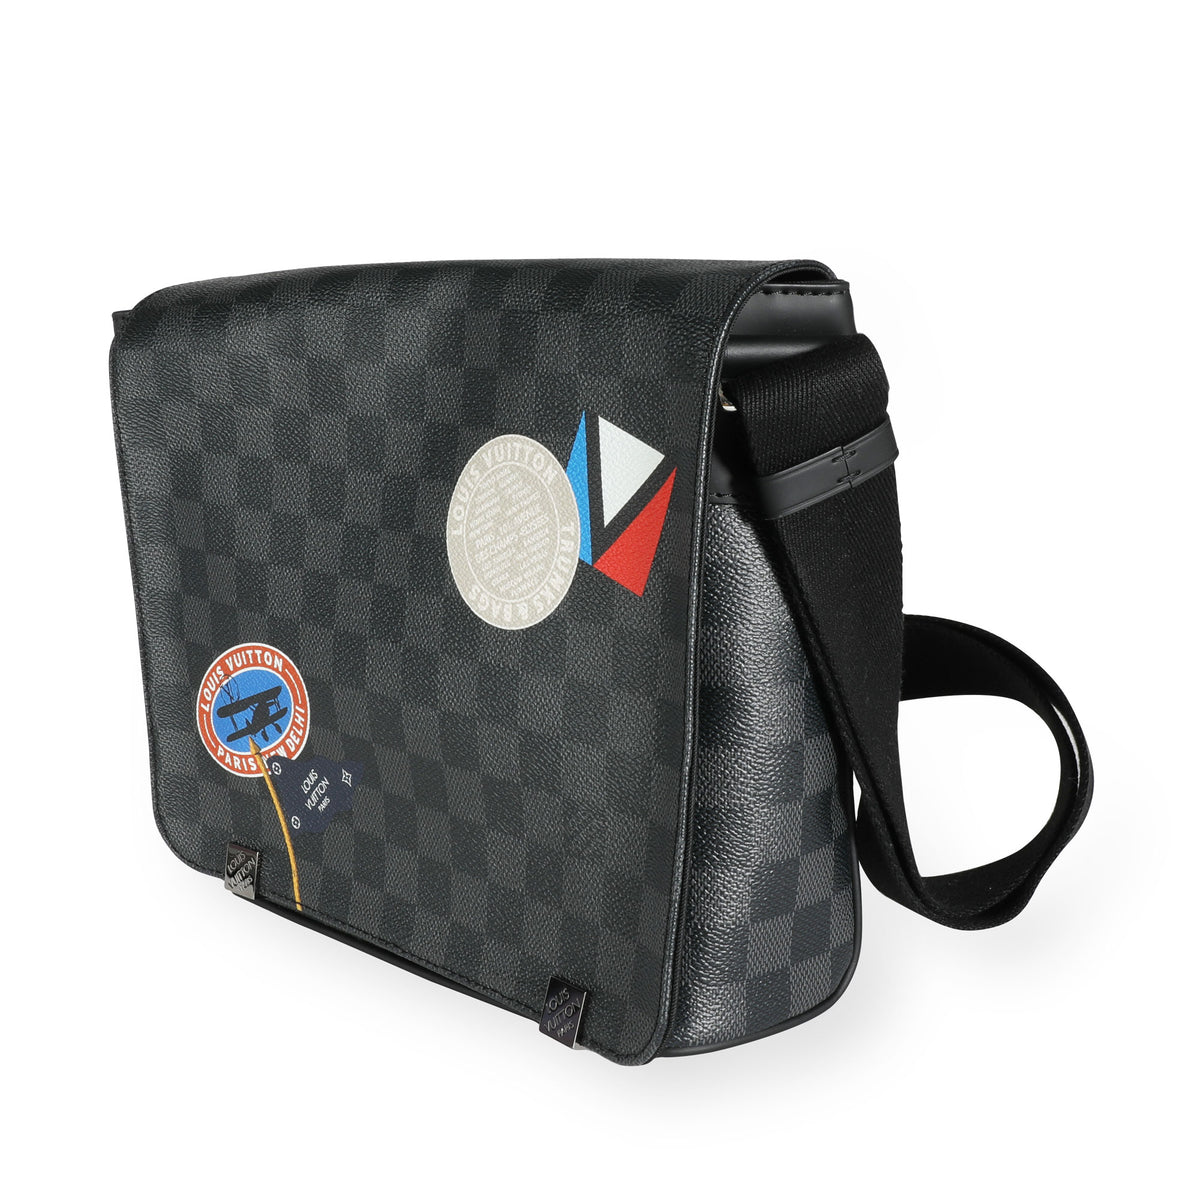 Authentic Louis Vuitton Limited Edition Damier Graphite LV League District  PM Messenger Bag